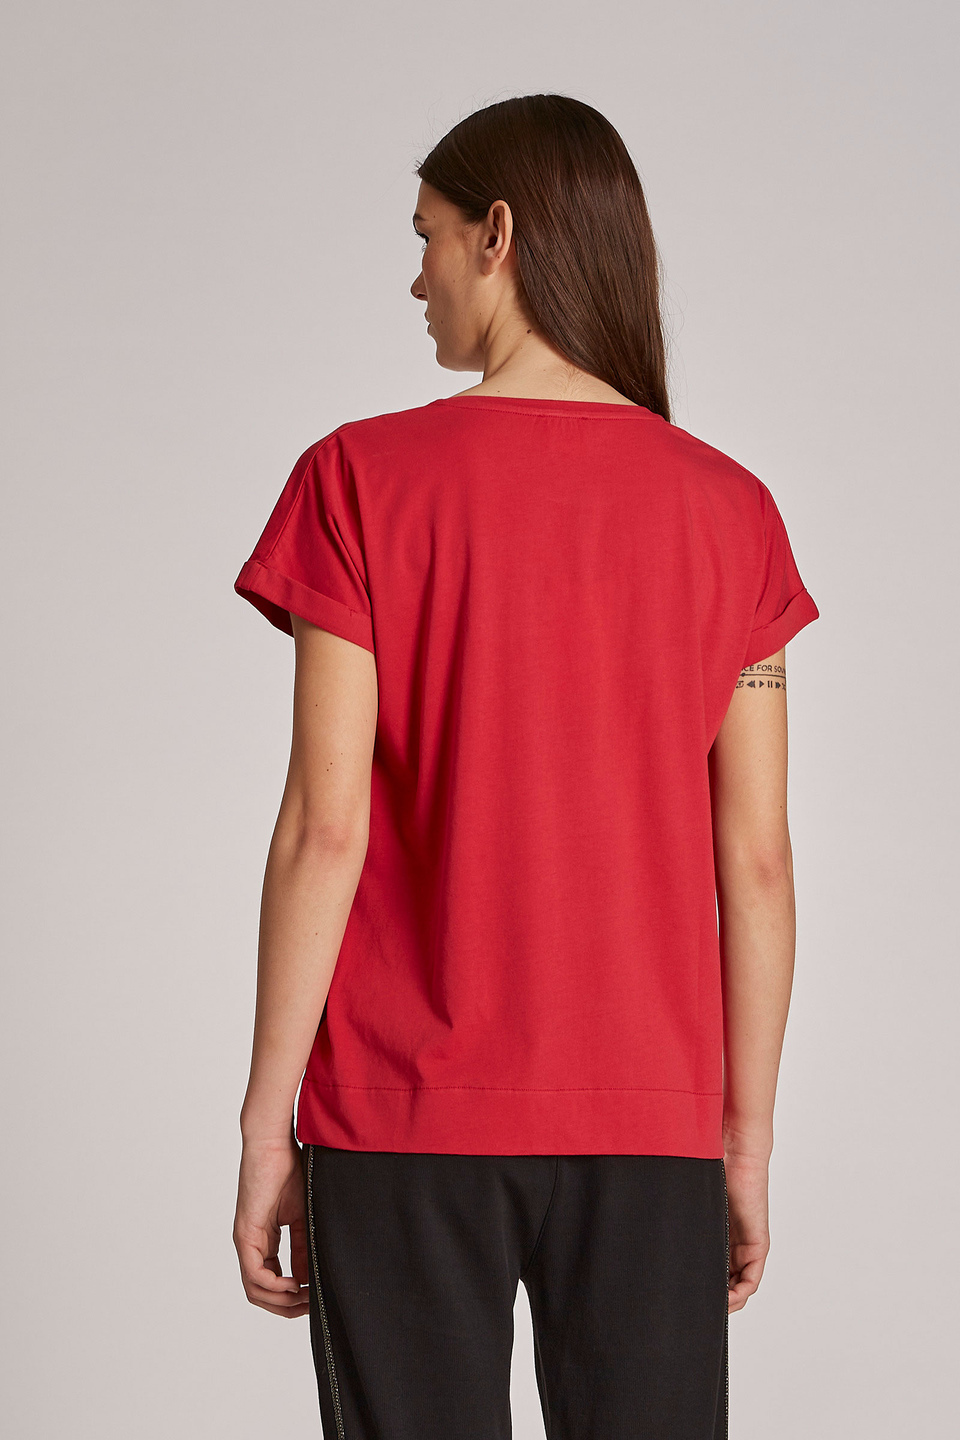 Camiseta de mujer de algodón 100 % con estampado del logotipo, corte regular - La Martina - Official Online Shop